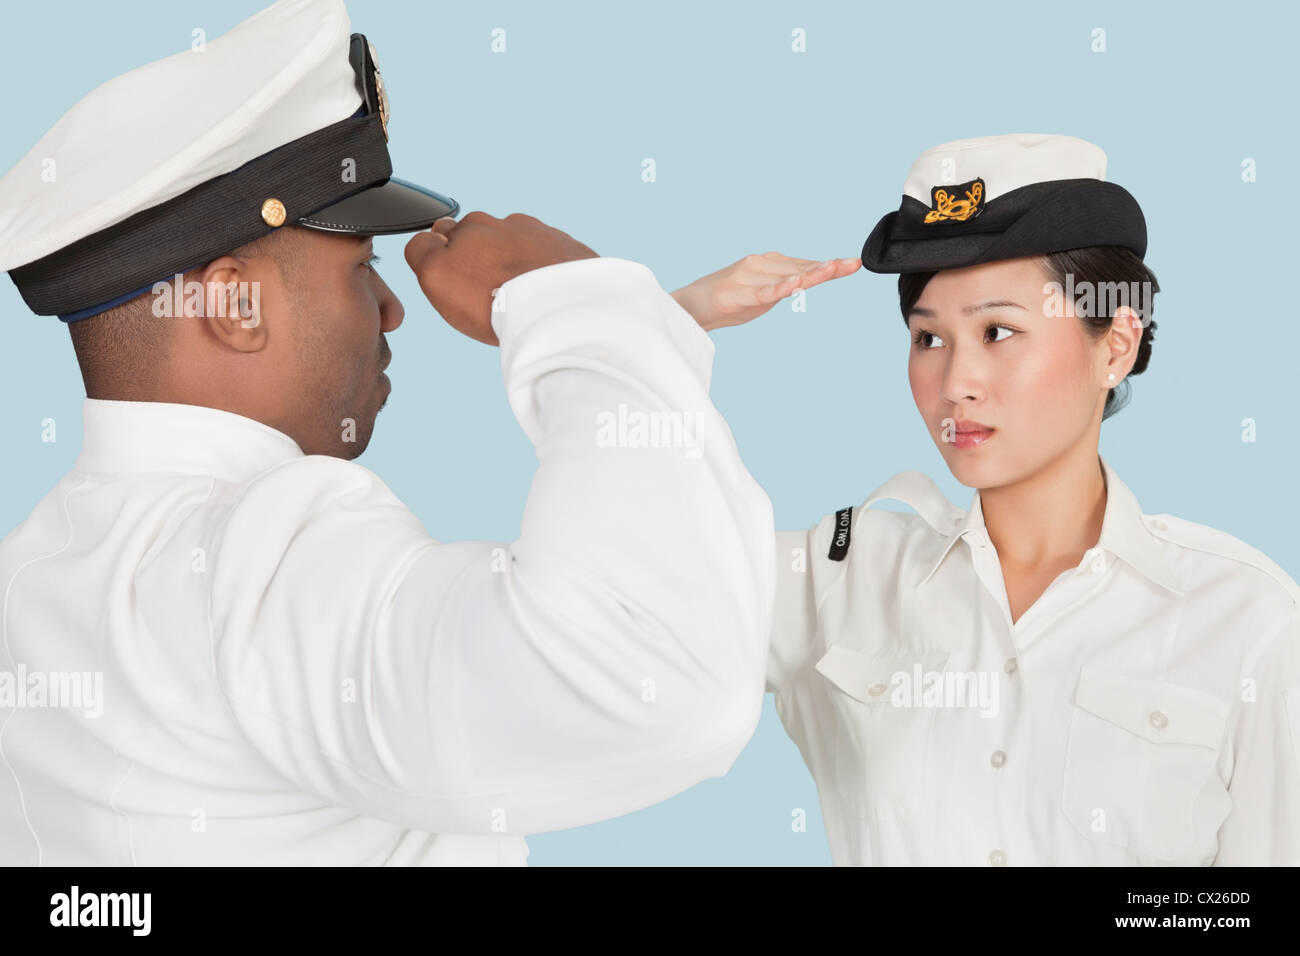 Nous multi-ethnique de la Marine en saluant l'autre sur fond bleu clair Banque D'Images